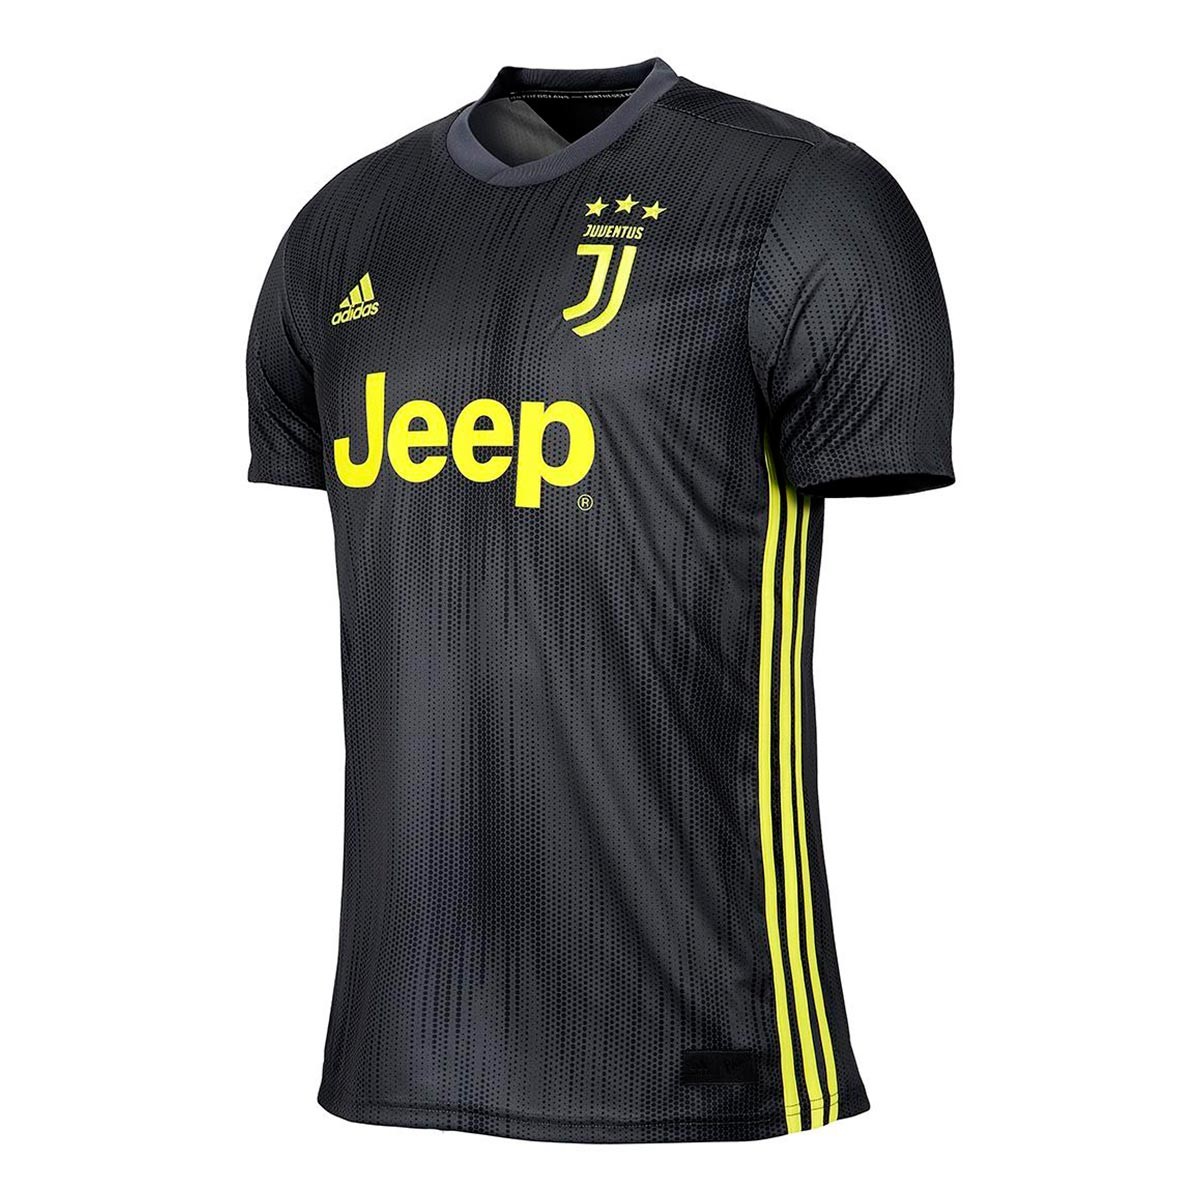 Camiseta adidas Juventus Tercera Equipación 2018-2019 Carbon-Shock yellow -  Tienda de fútbol Fútbol Emotion